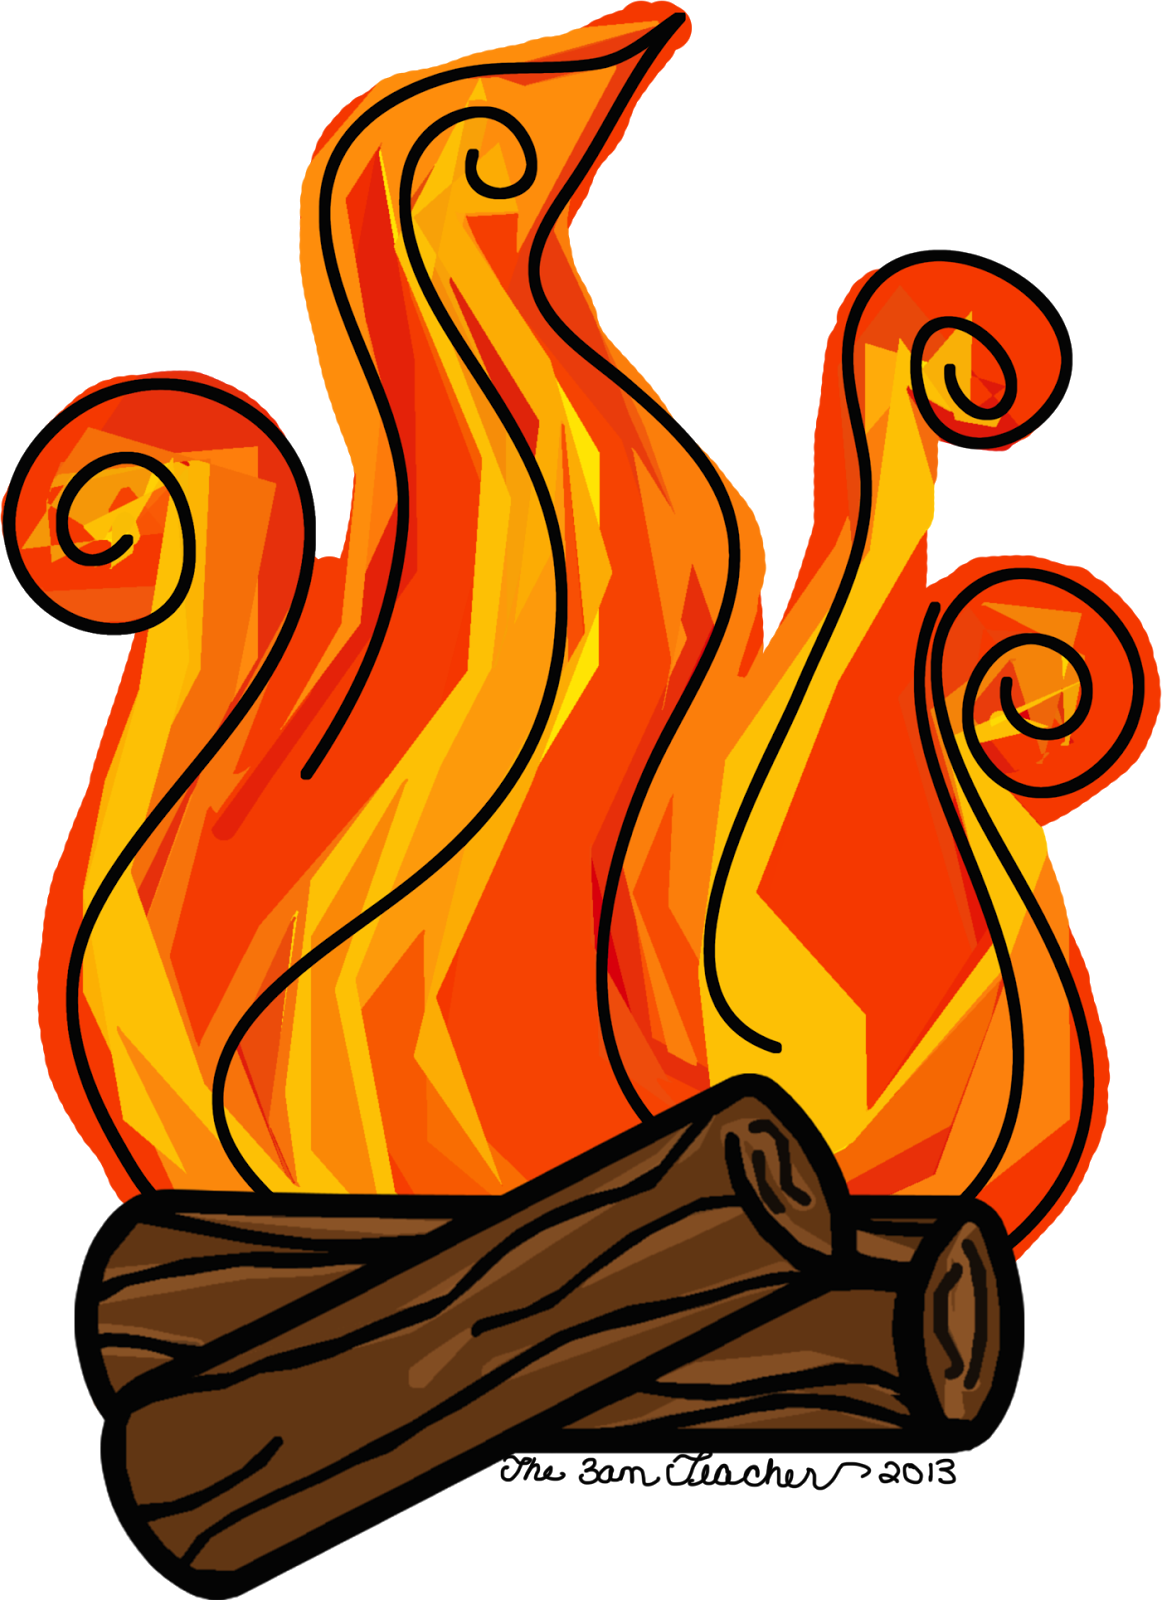 fireplace clipart fire log